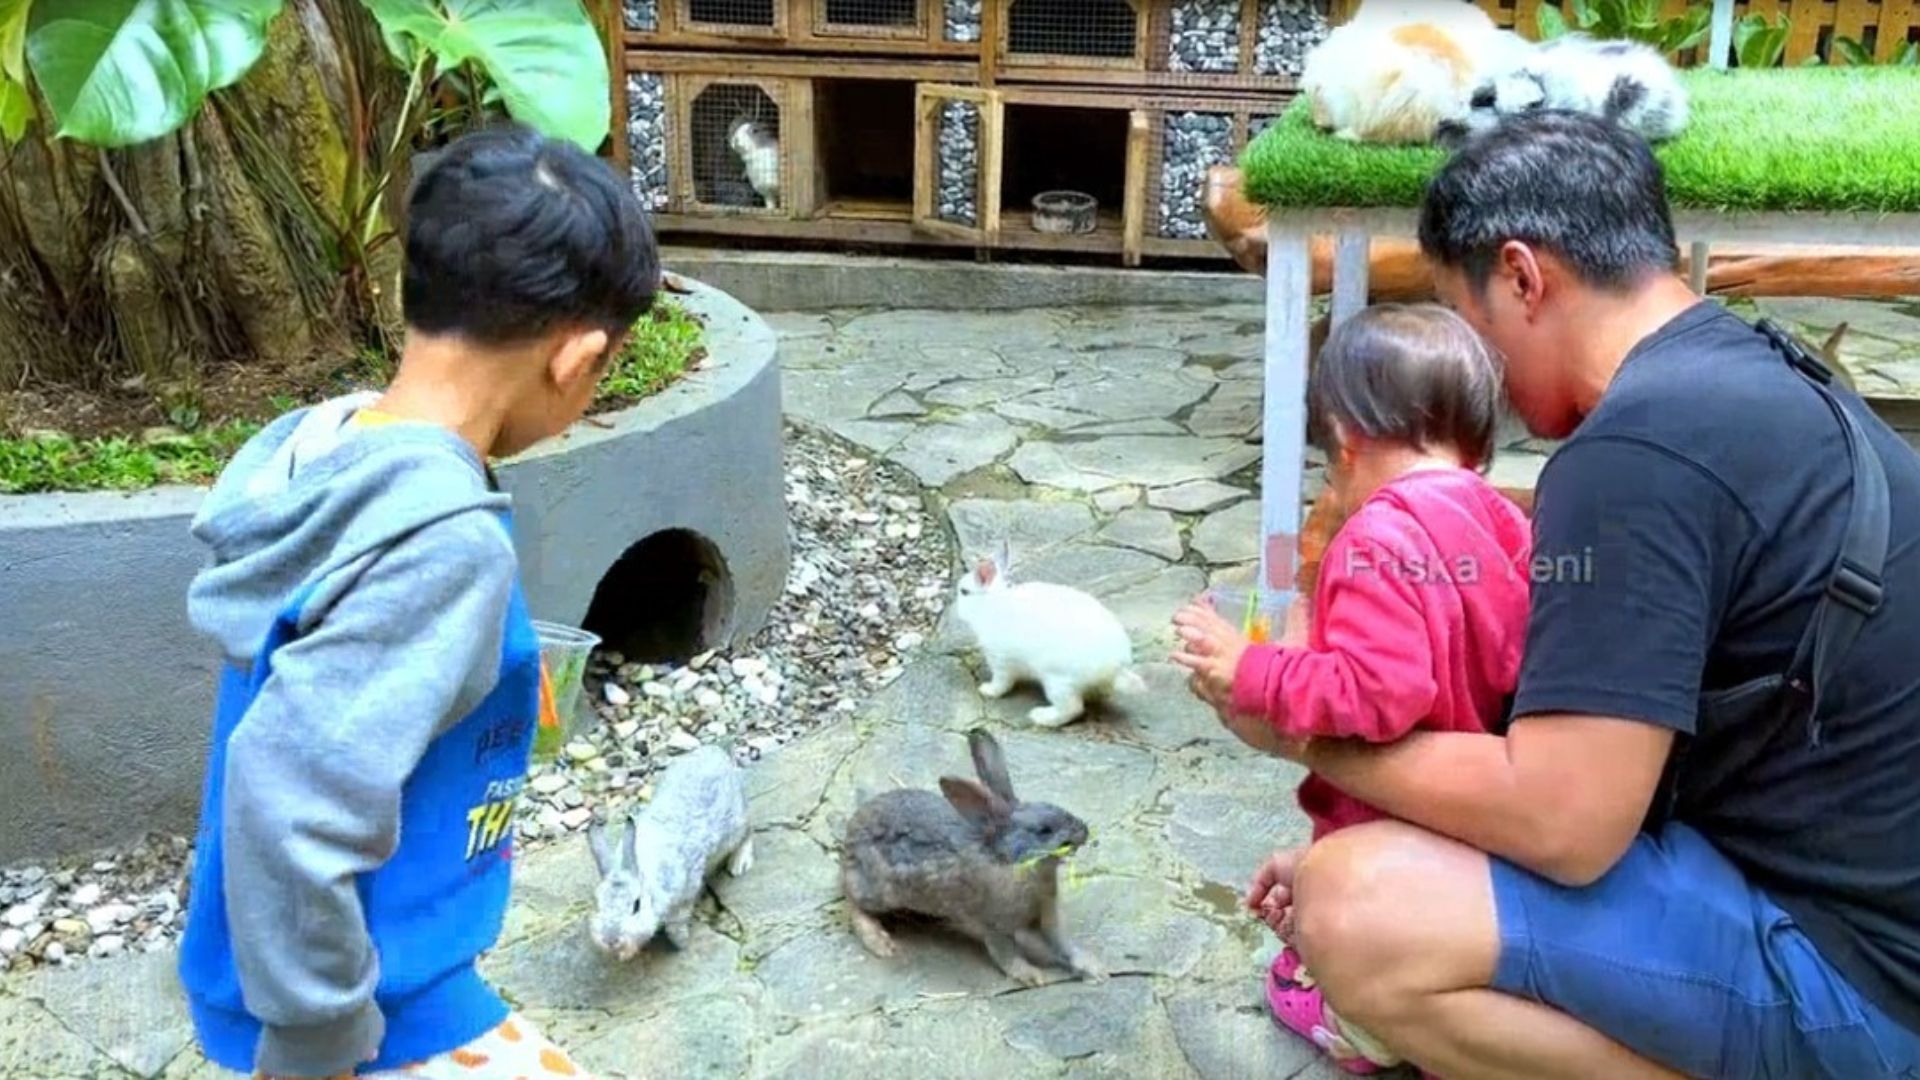 Rabbit House di Kampung Daun Culture Gallery and Cafe Bandung, akan membuat anak-anak senang, terlebih mereka diperbolehkan memegang dan memberi makan./ Youtube/ Friska Yeni/